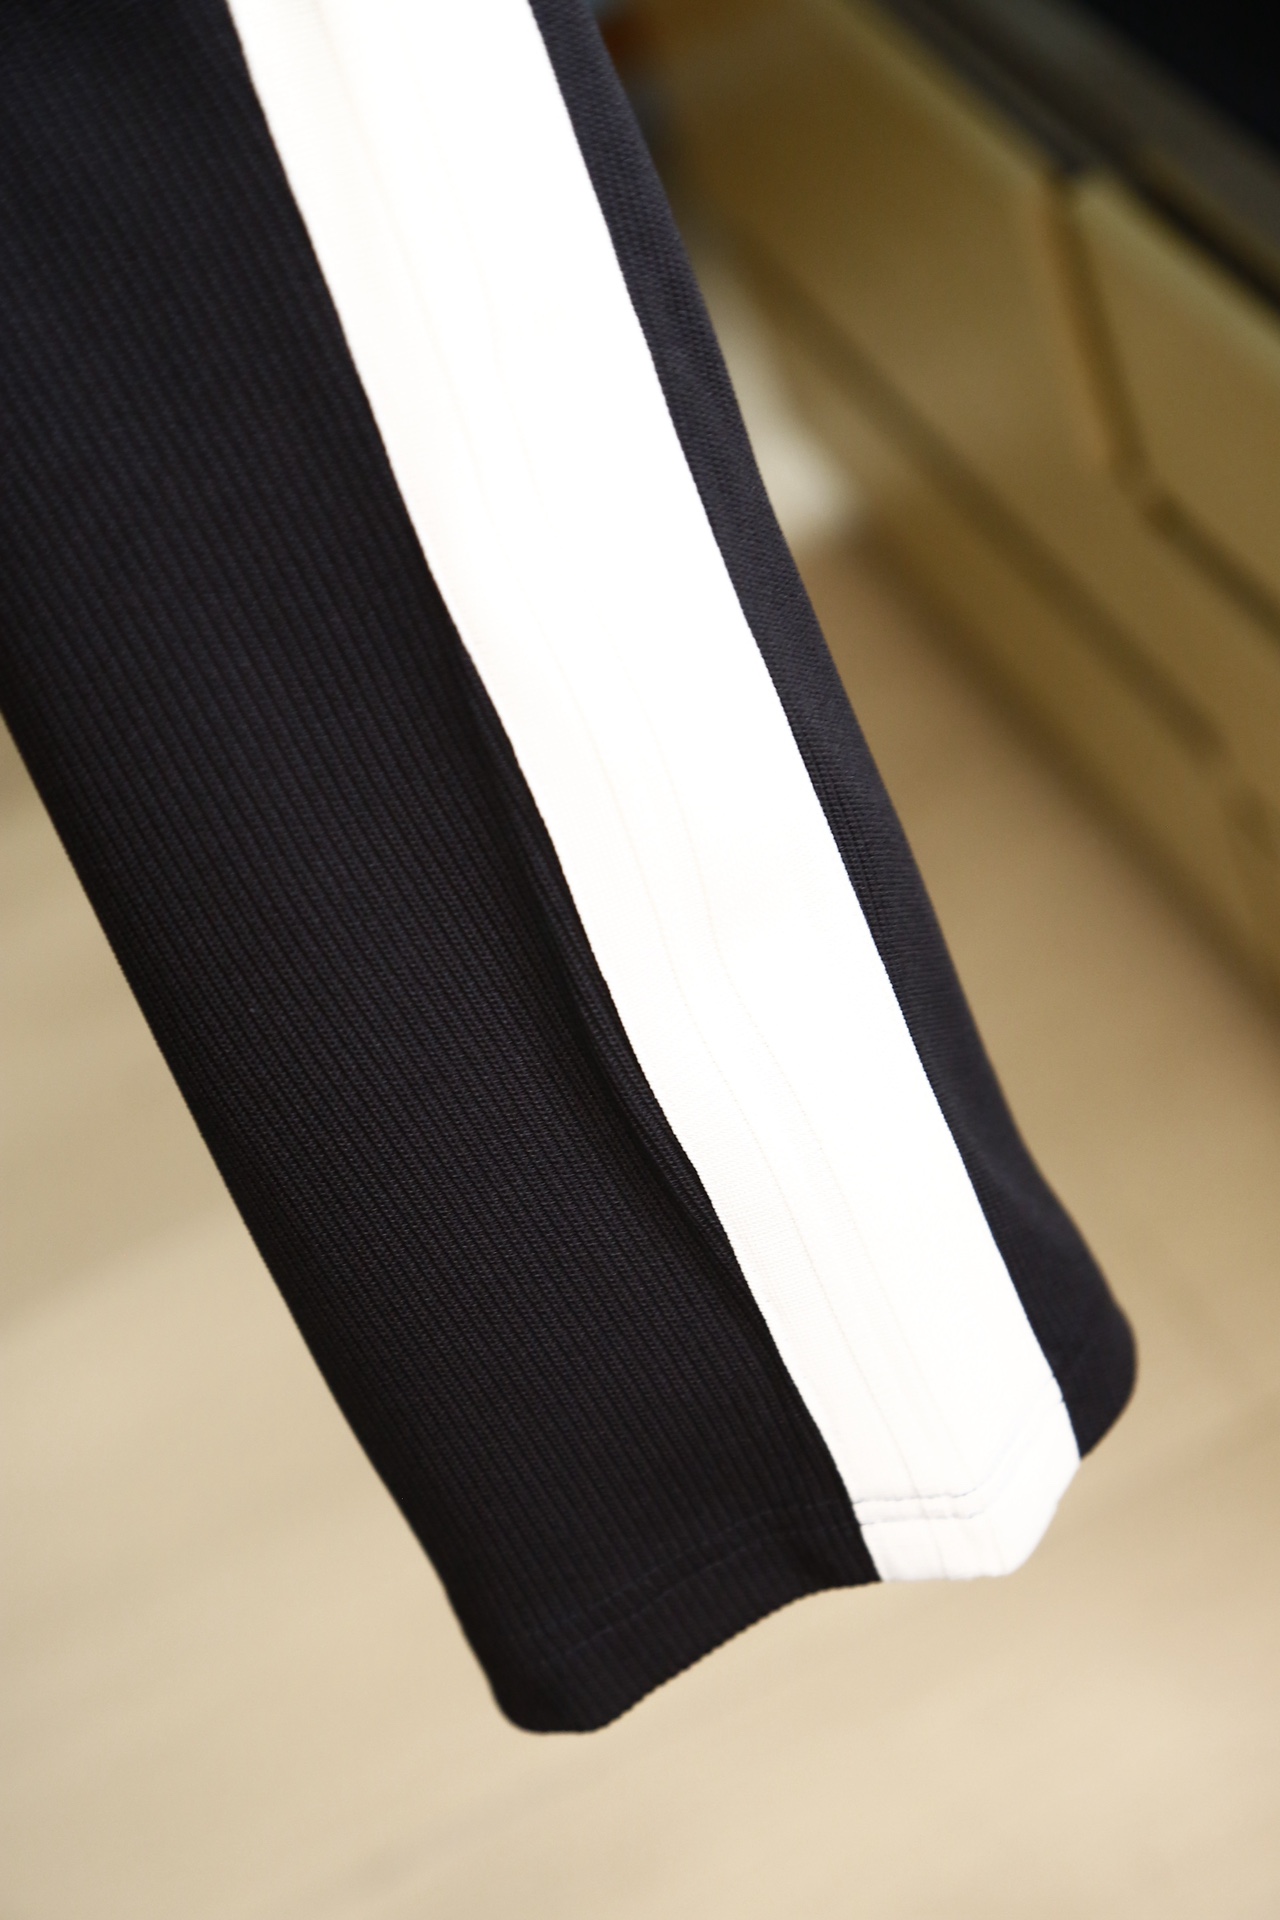 LV早春专柜新品同步上市原单订制高品质时尚西装裤超级百搭款独家定制-进口高端450克欧棉面料手感细腻柔软